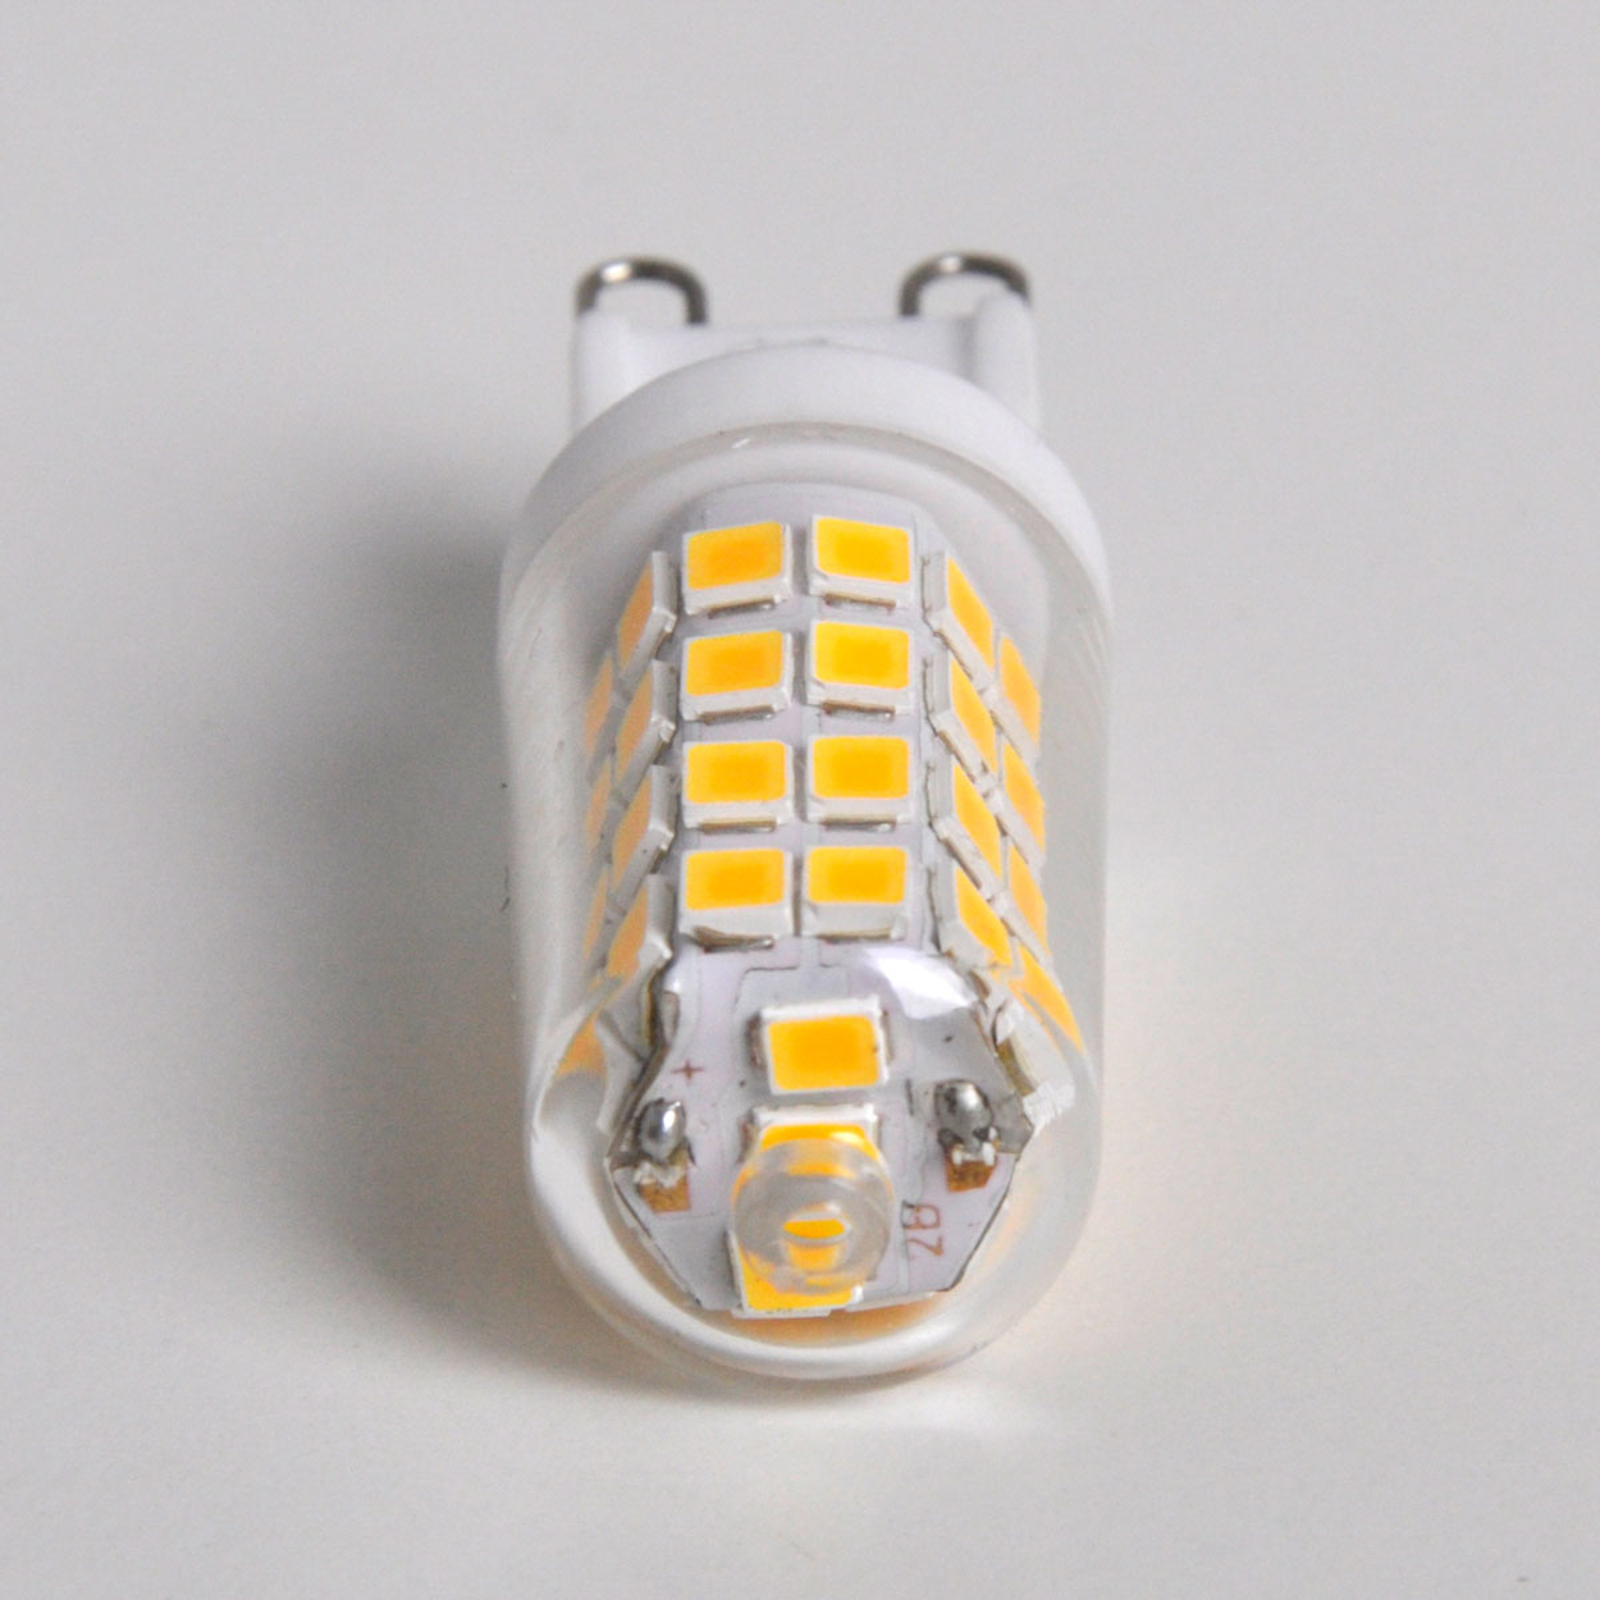 LED bispina G9 3W, bianco caldo, 330 Lumen set 5x